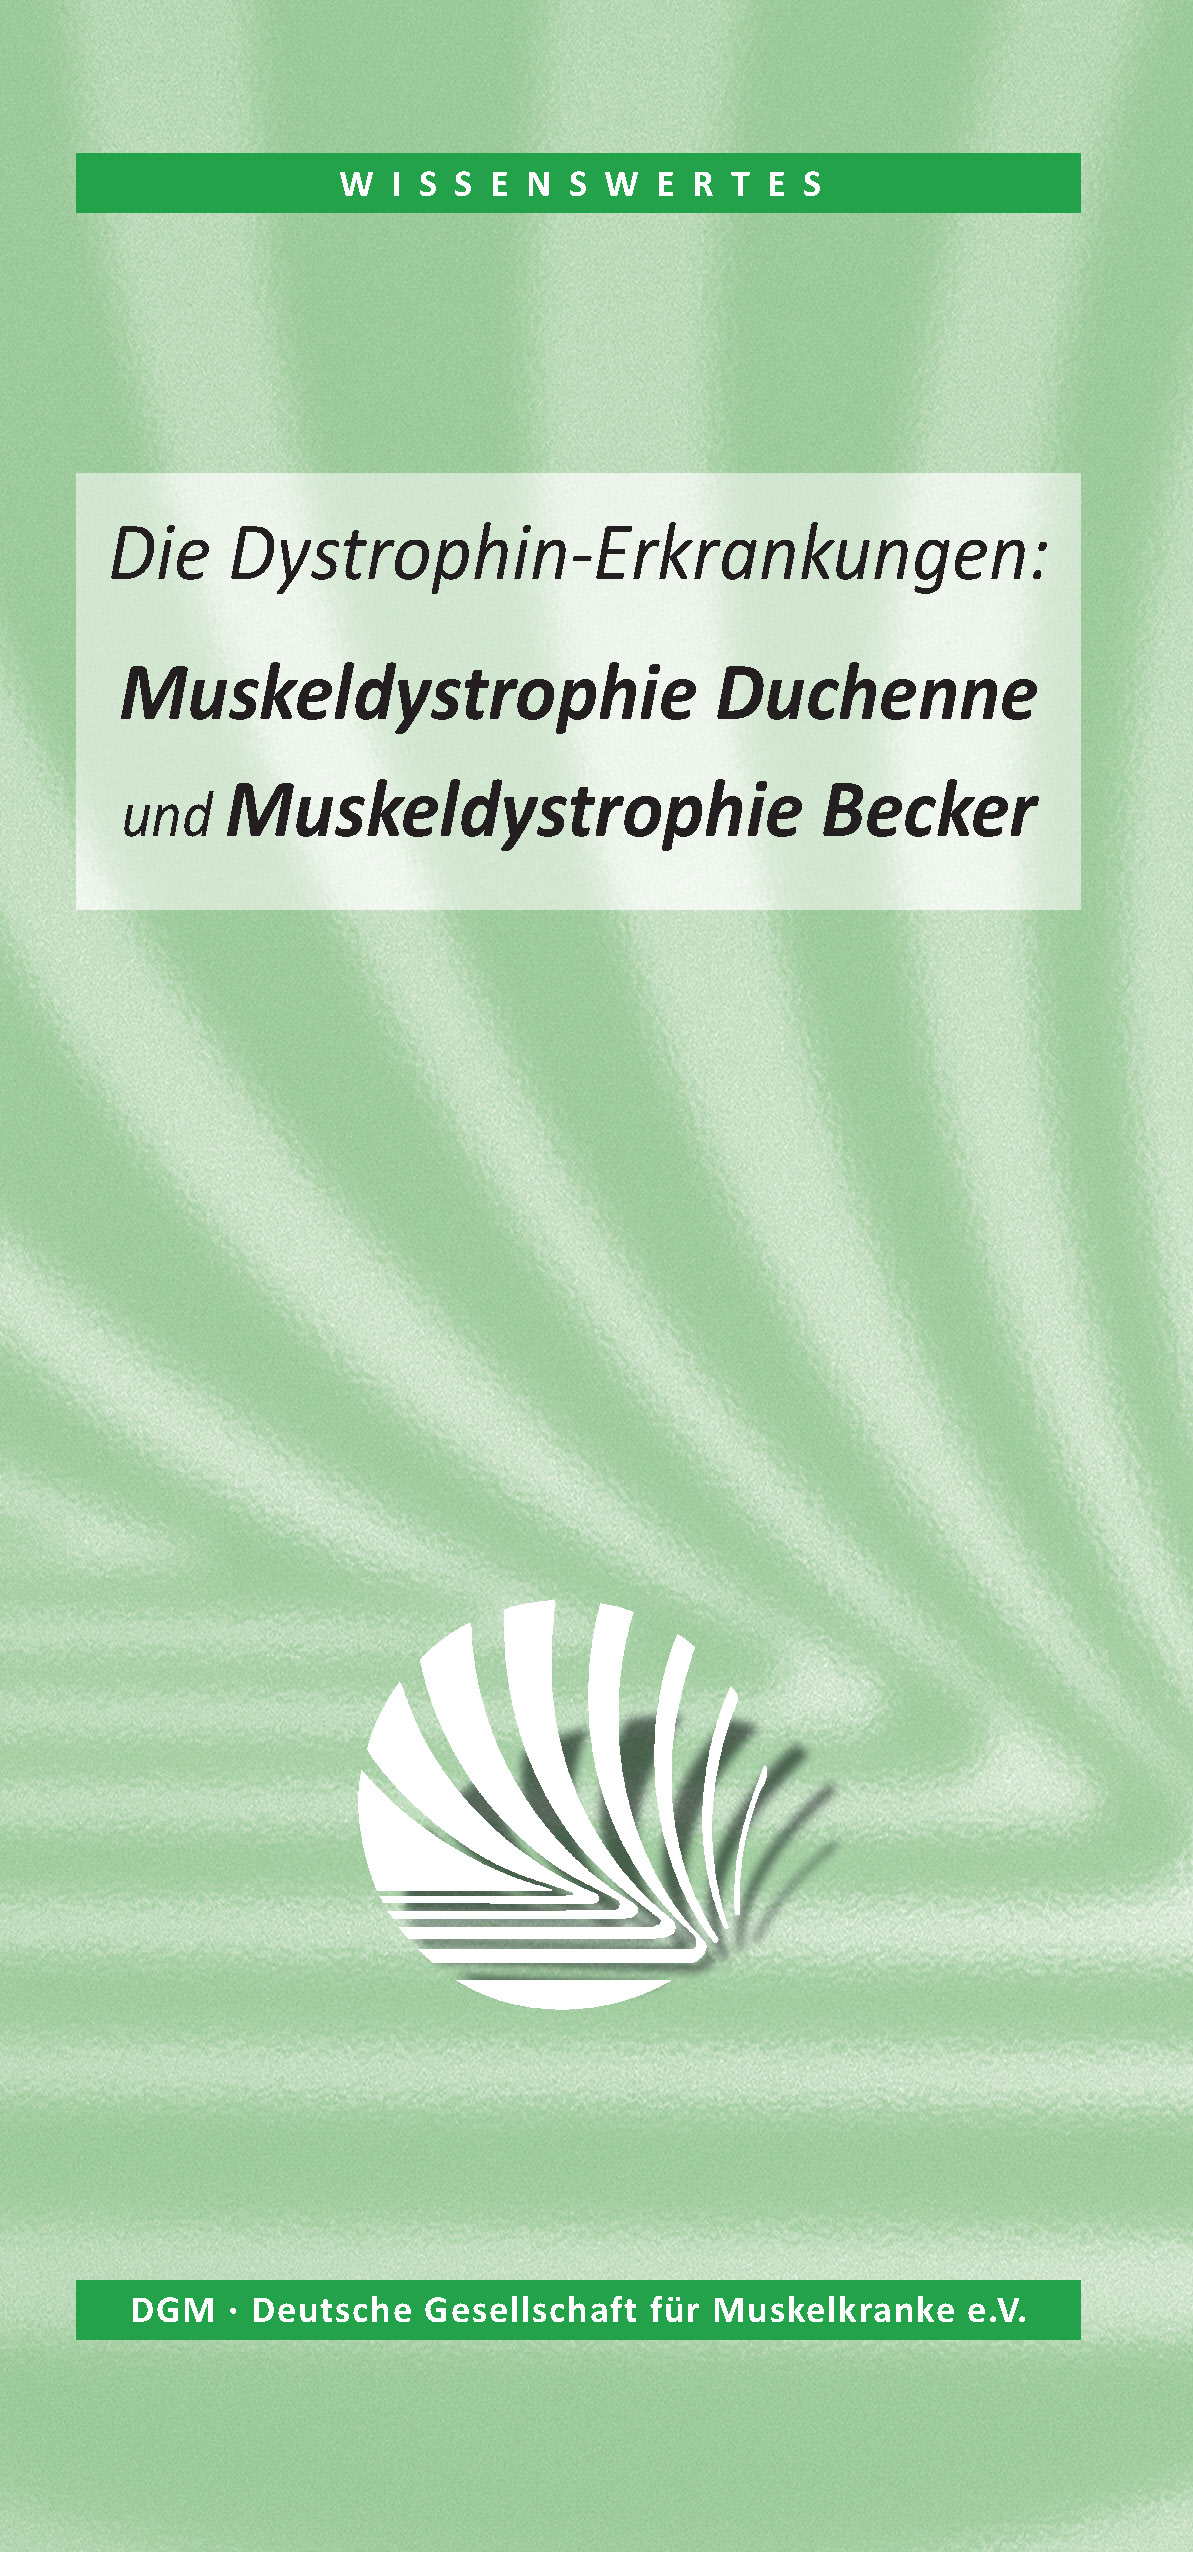 Wissenswertes: Die Dystrophin-Erkrankungen - Muskeldystrophie Duchenne und Becker